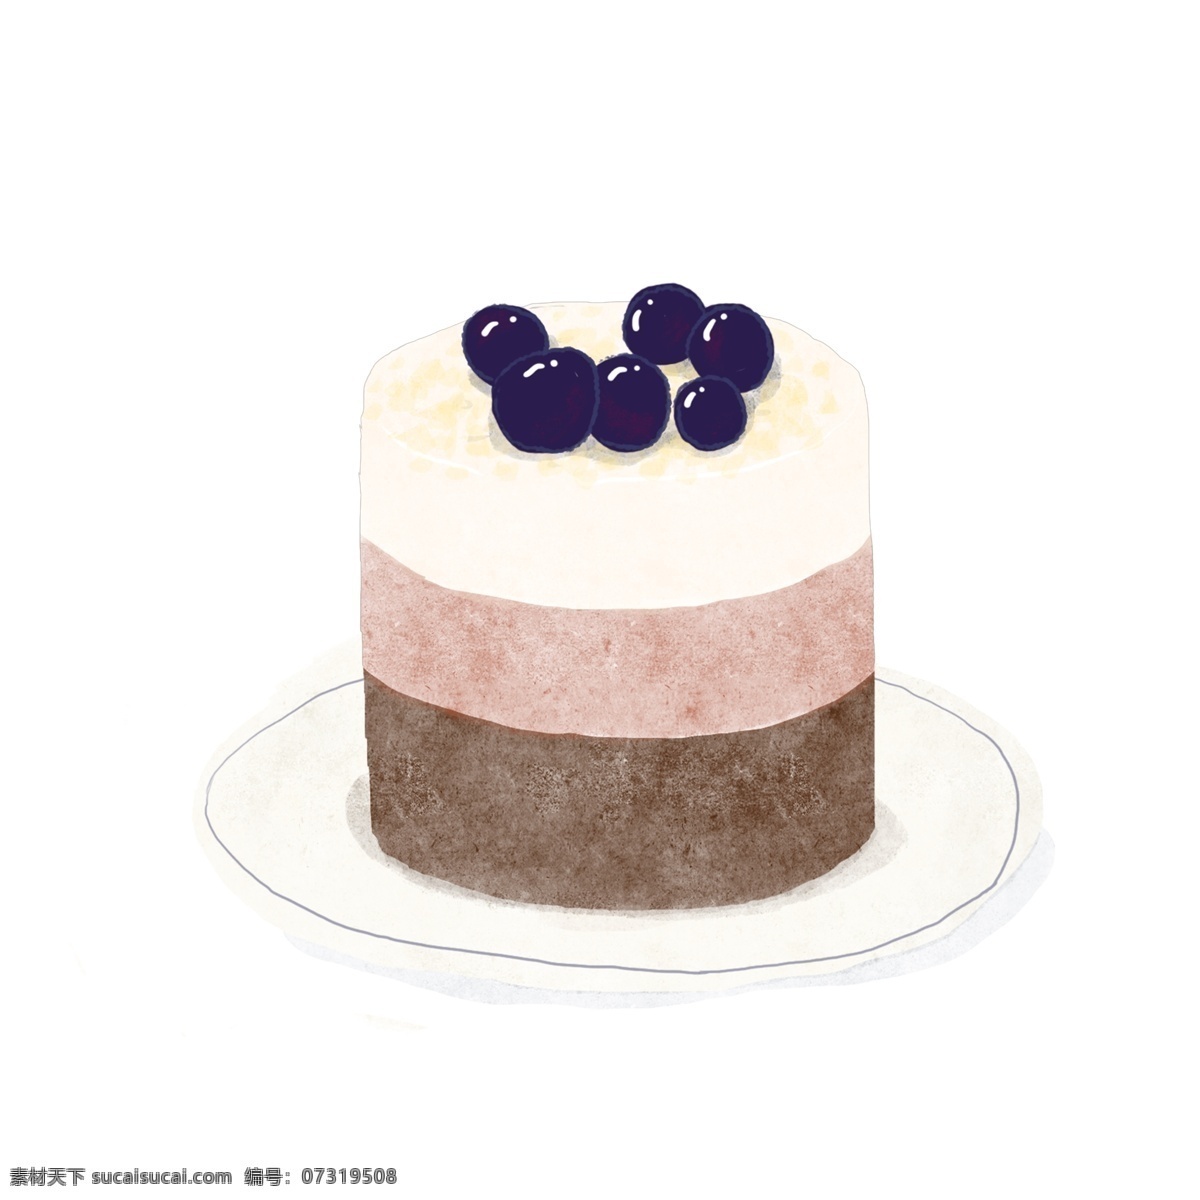 蓝莓小蛋糕 小蛋糕 蓝莓 三层 奶油 水果蛋糕